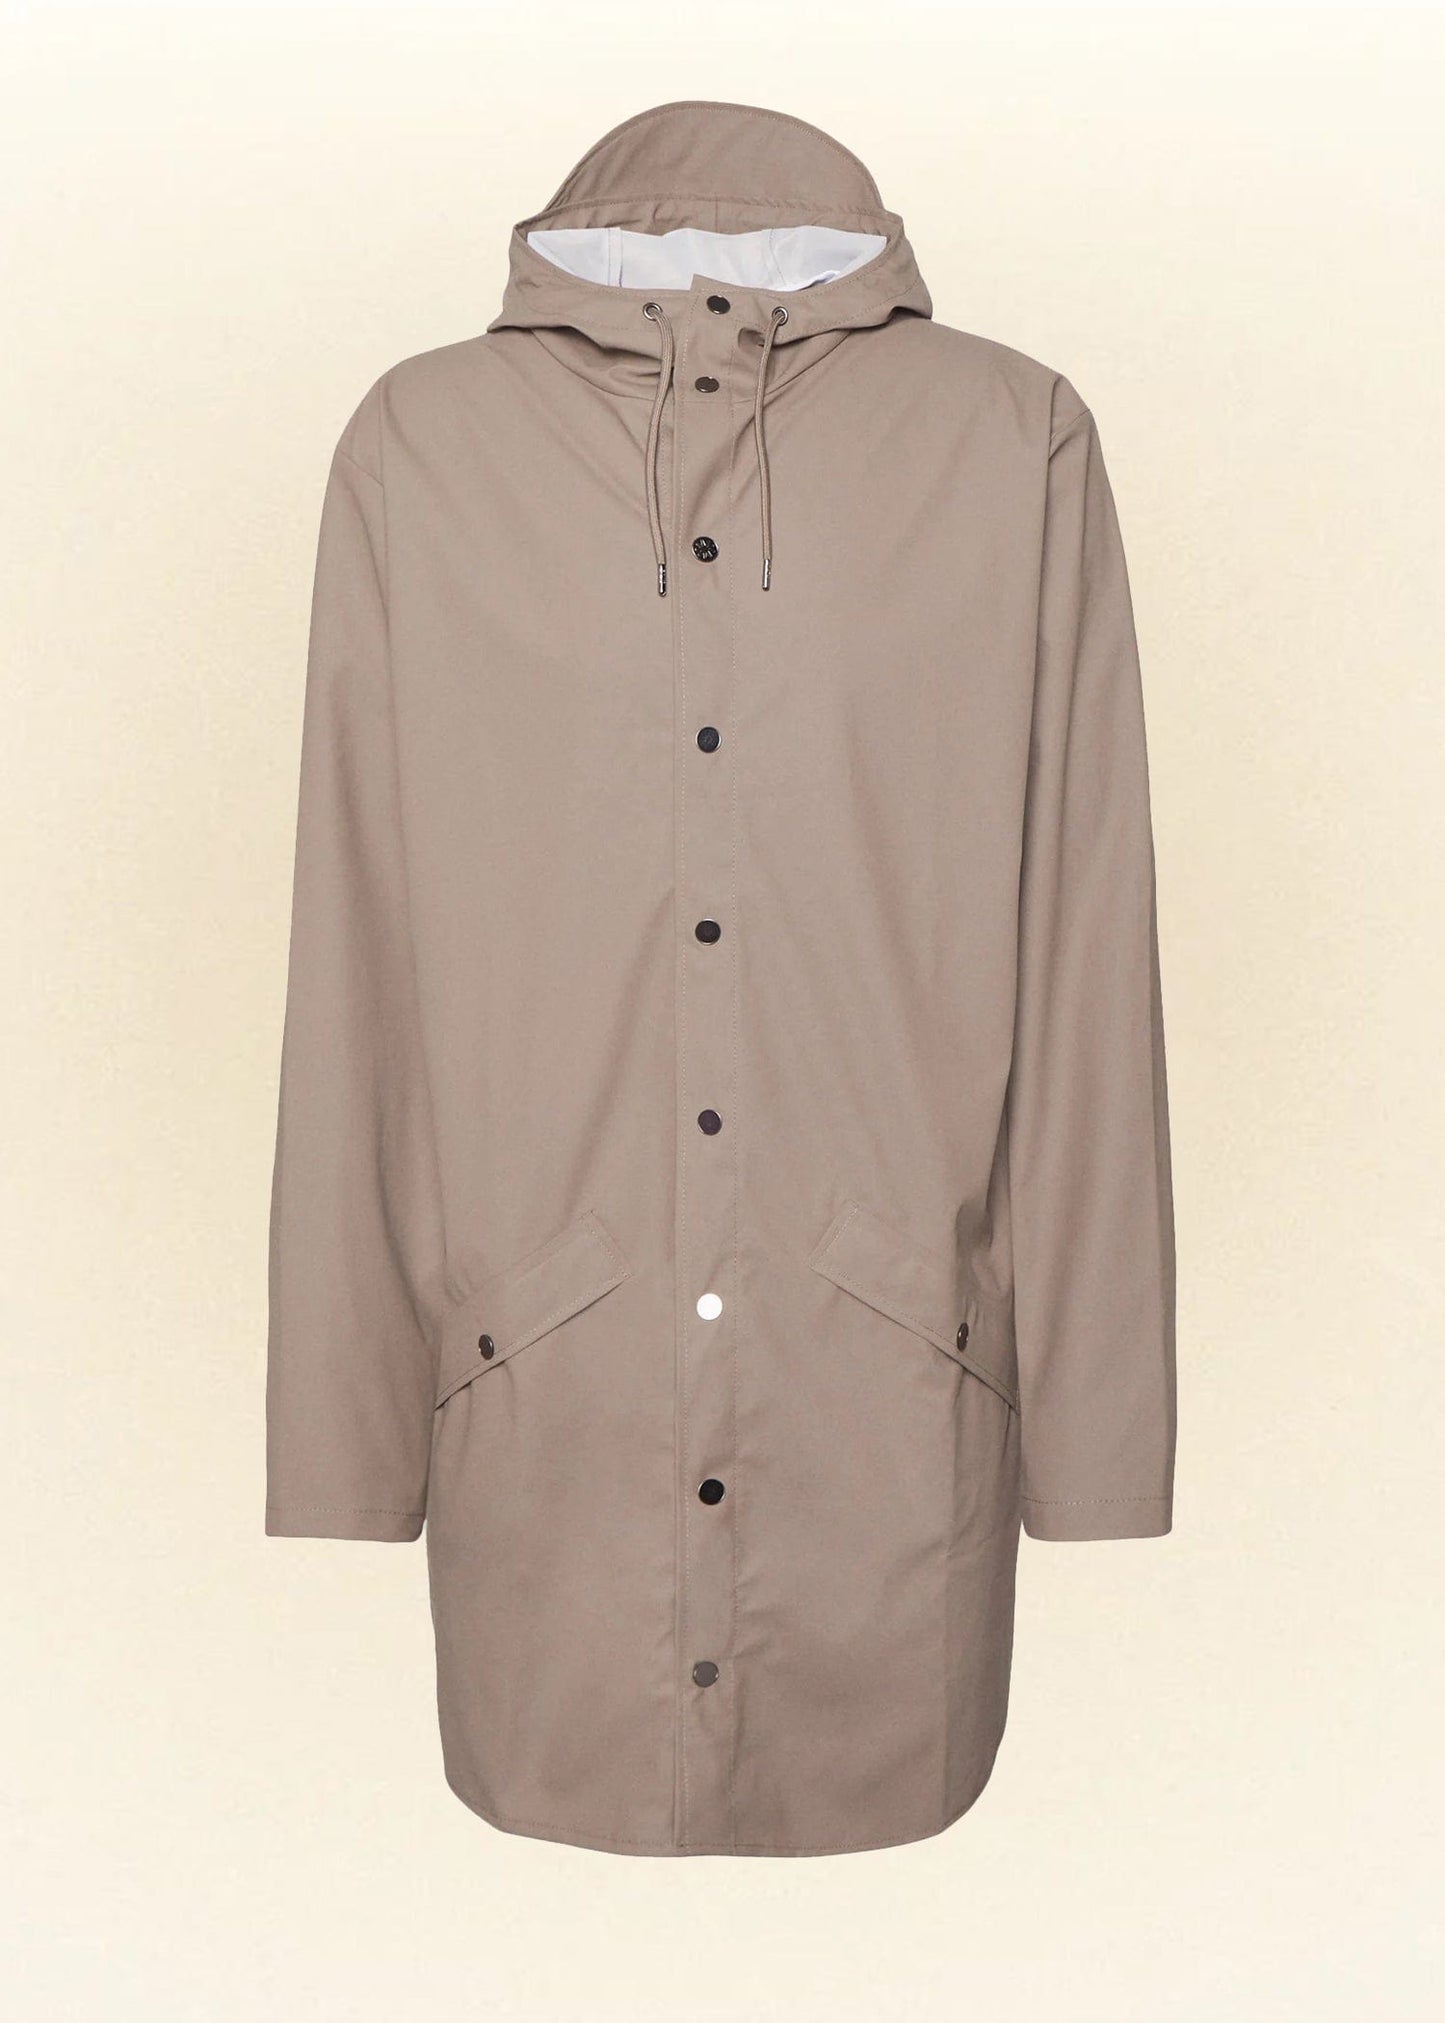 Rains Veste/Blouson Taupe / XS Imperméable Rains - Long Jacket